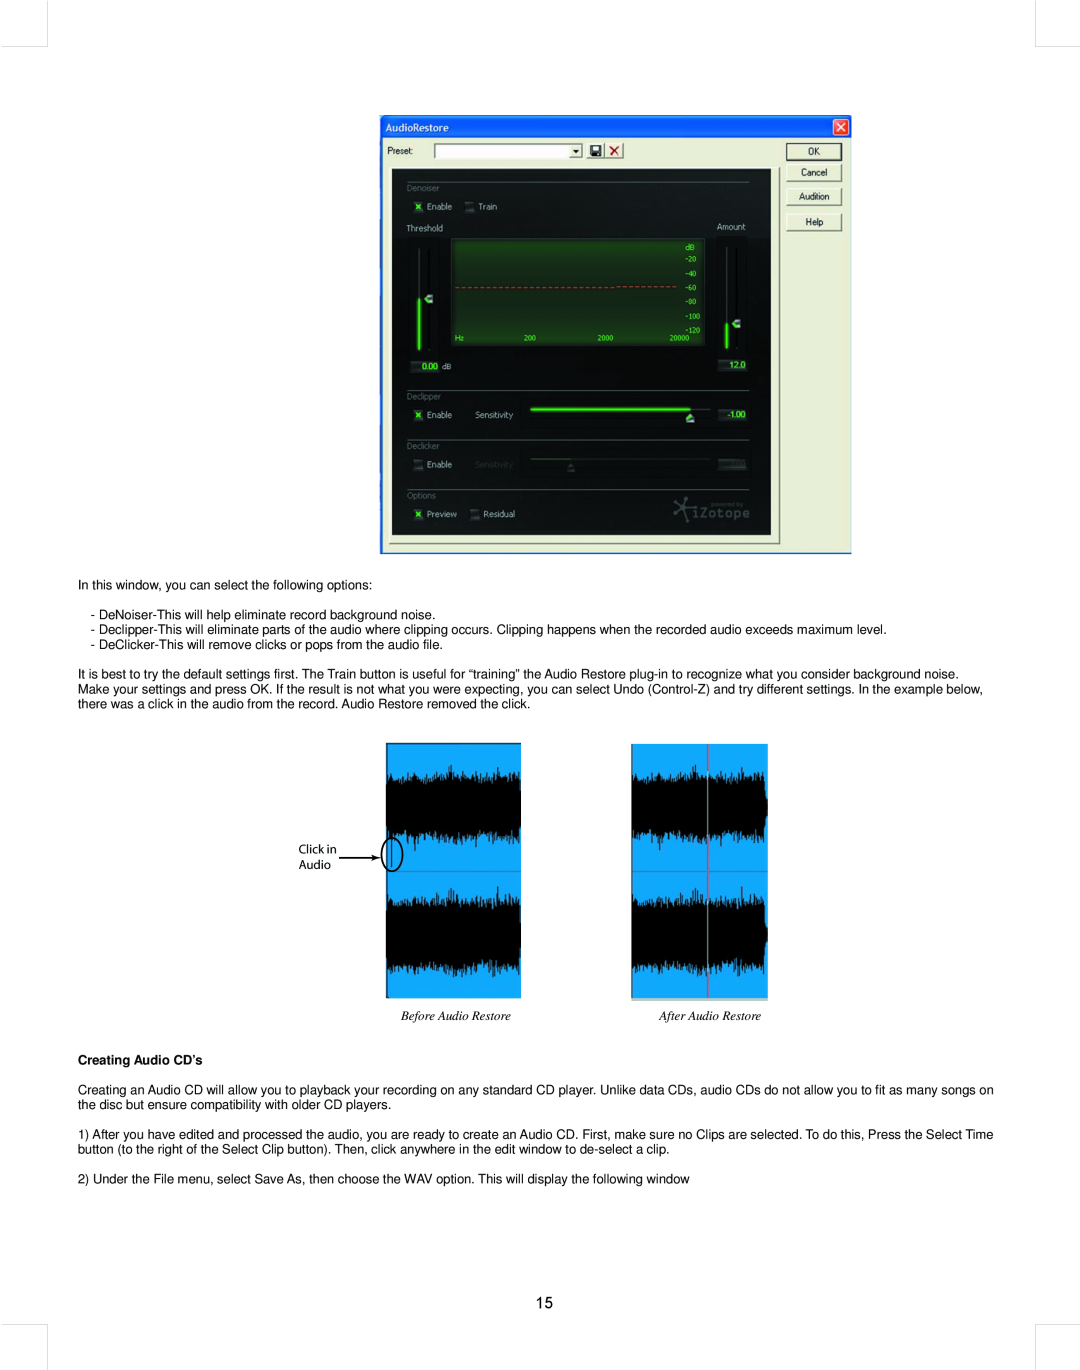 Stanton T.55 USB manual Before Audio Restore, Creating Audio CD’s, Click in Audio 